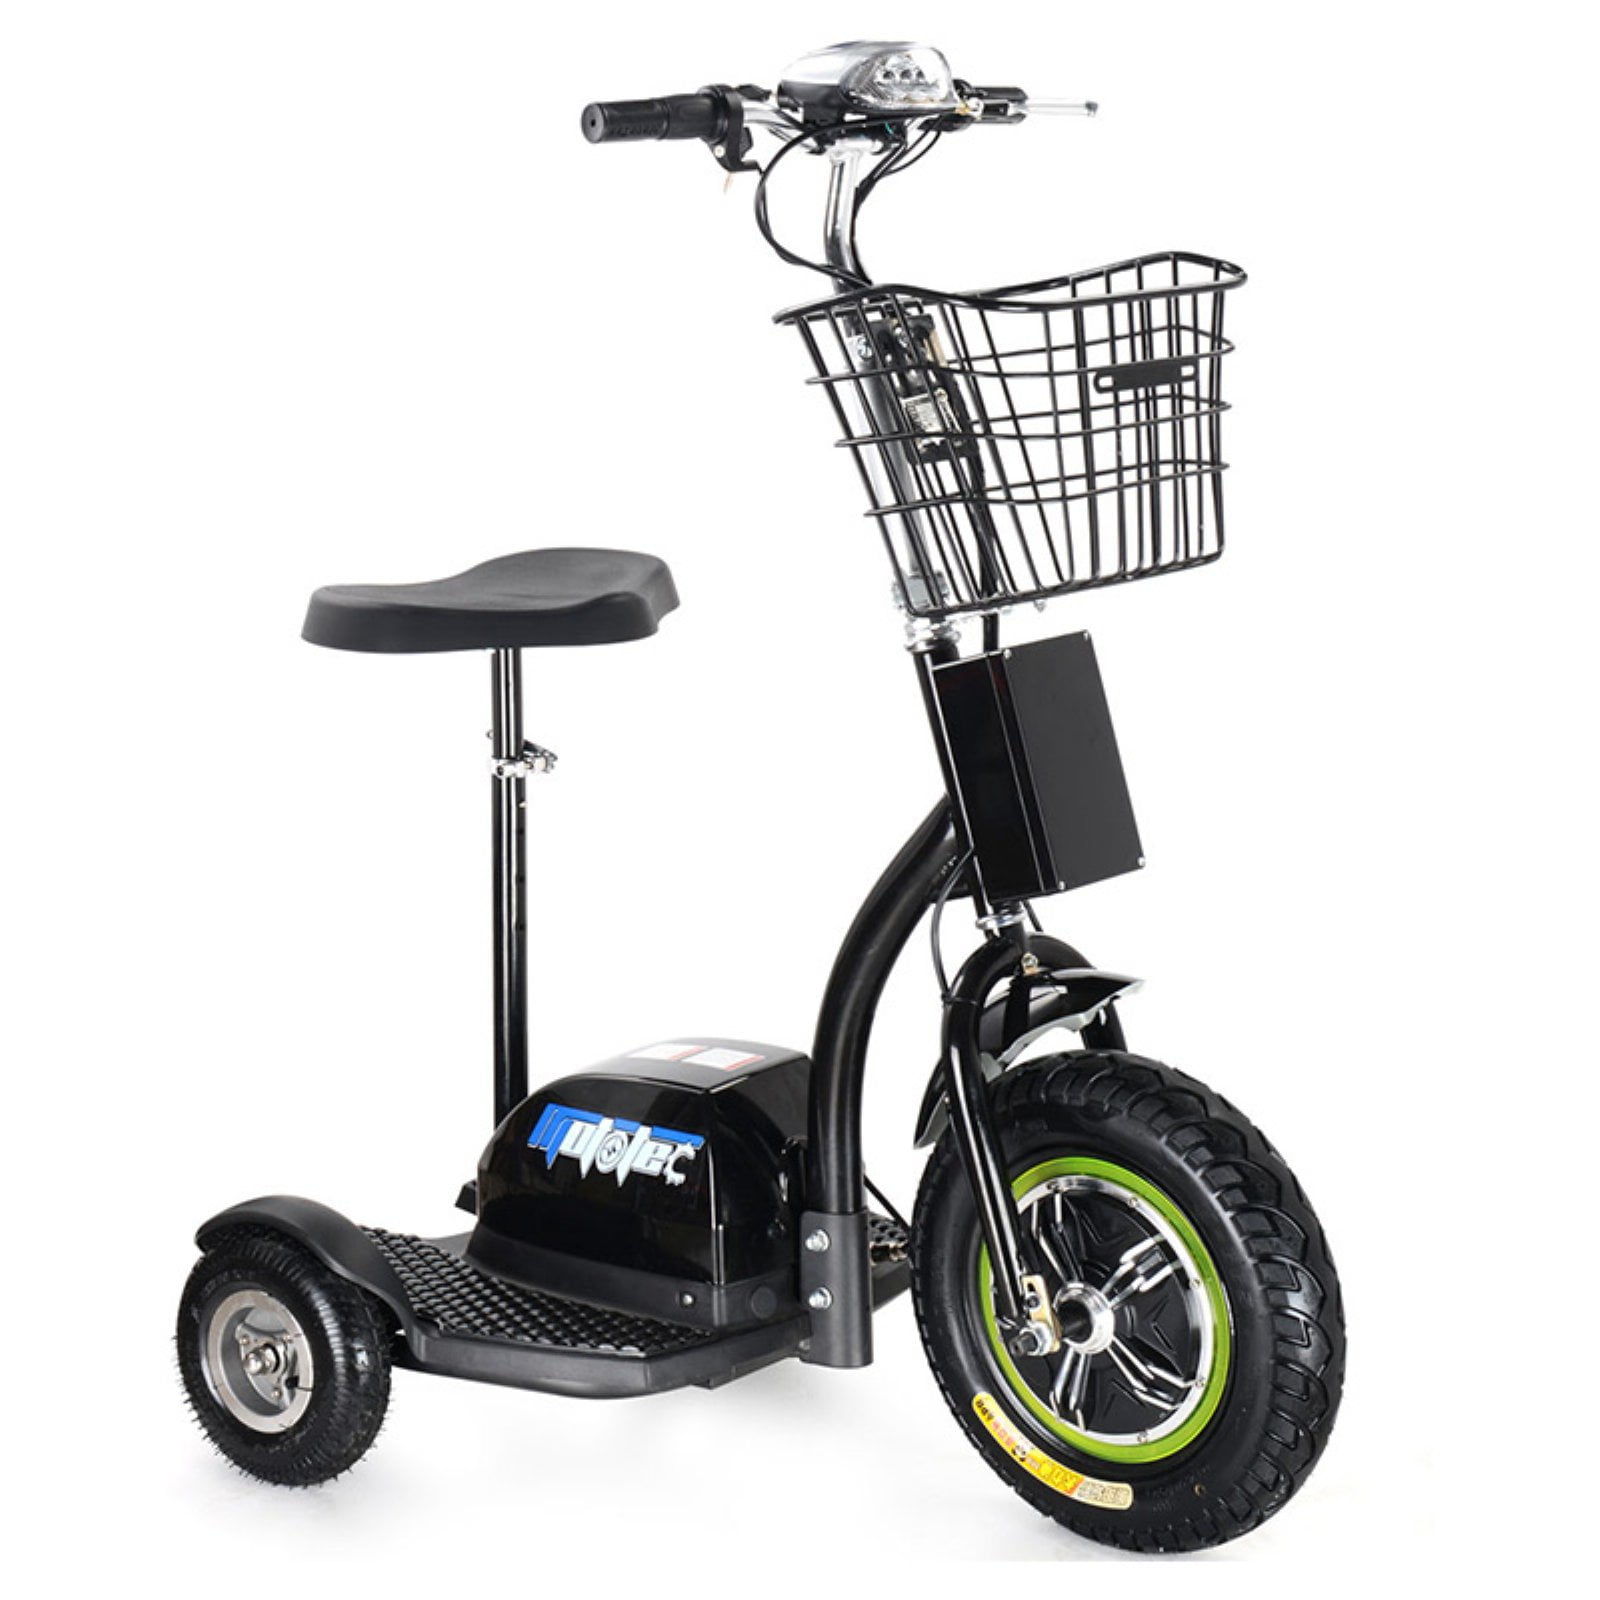 MotoTec 48V 3 Wheel Electric Scooter - Walmart.com